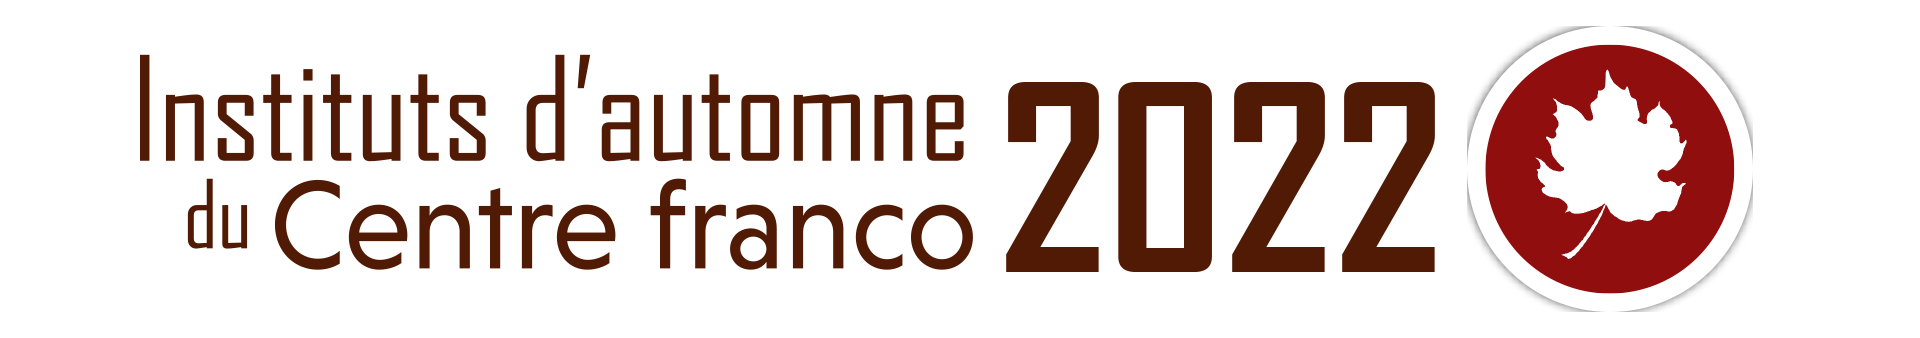 Les Instituts d'automne 2022 du centre franco